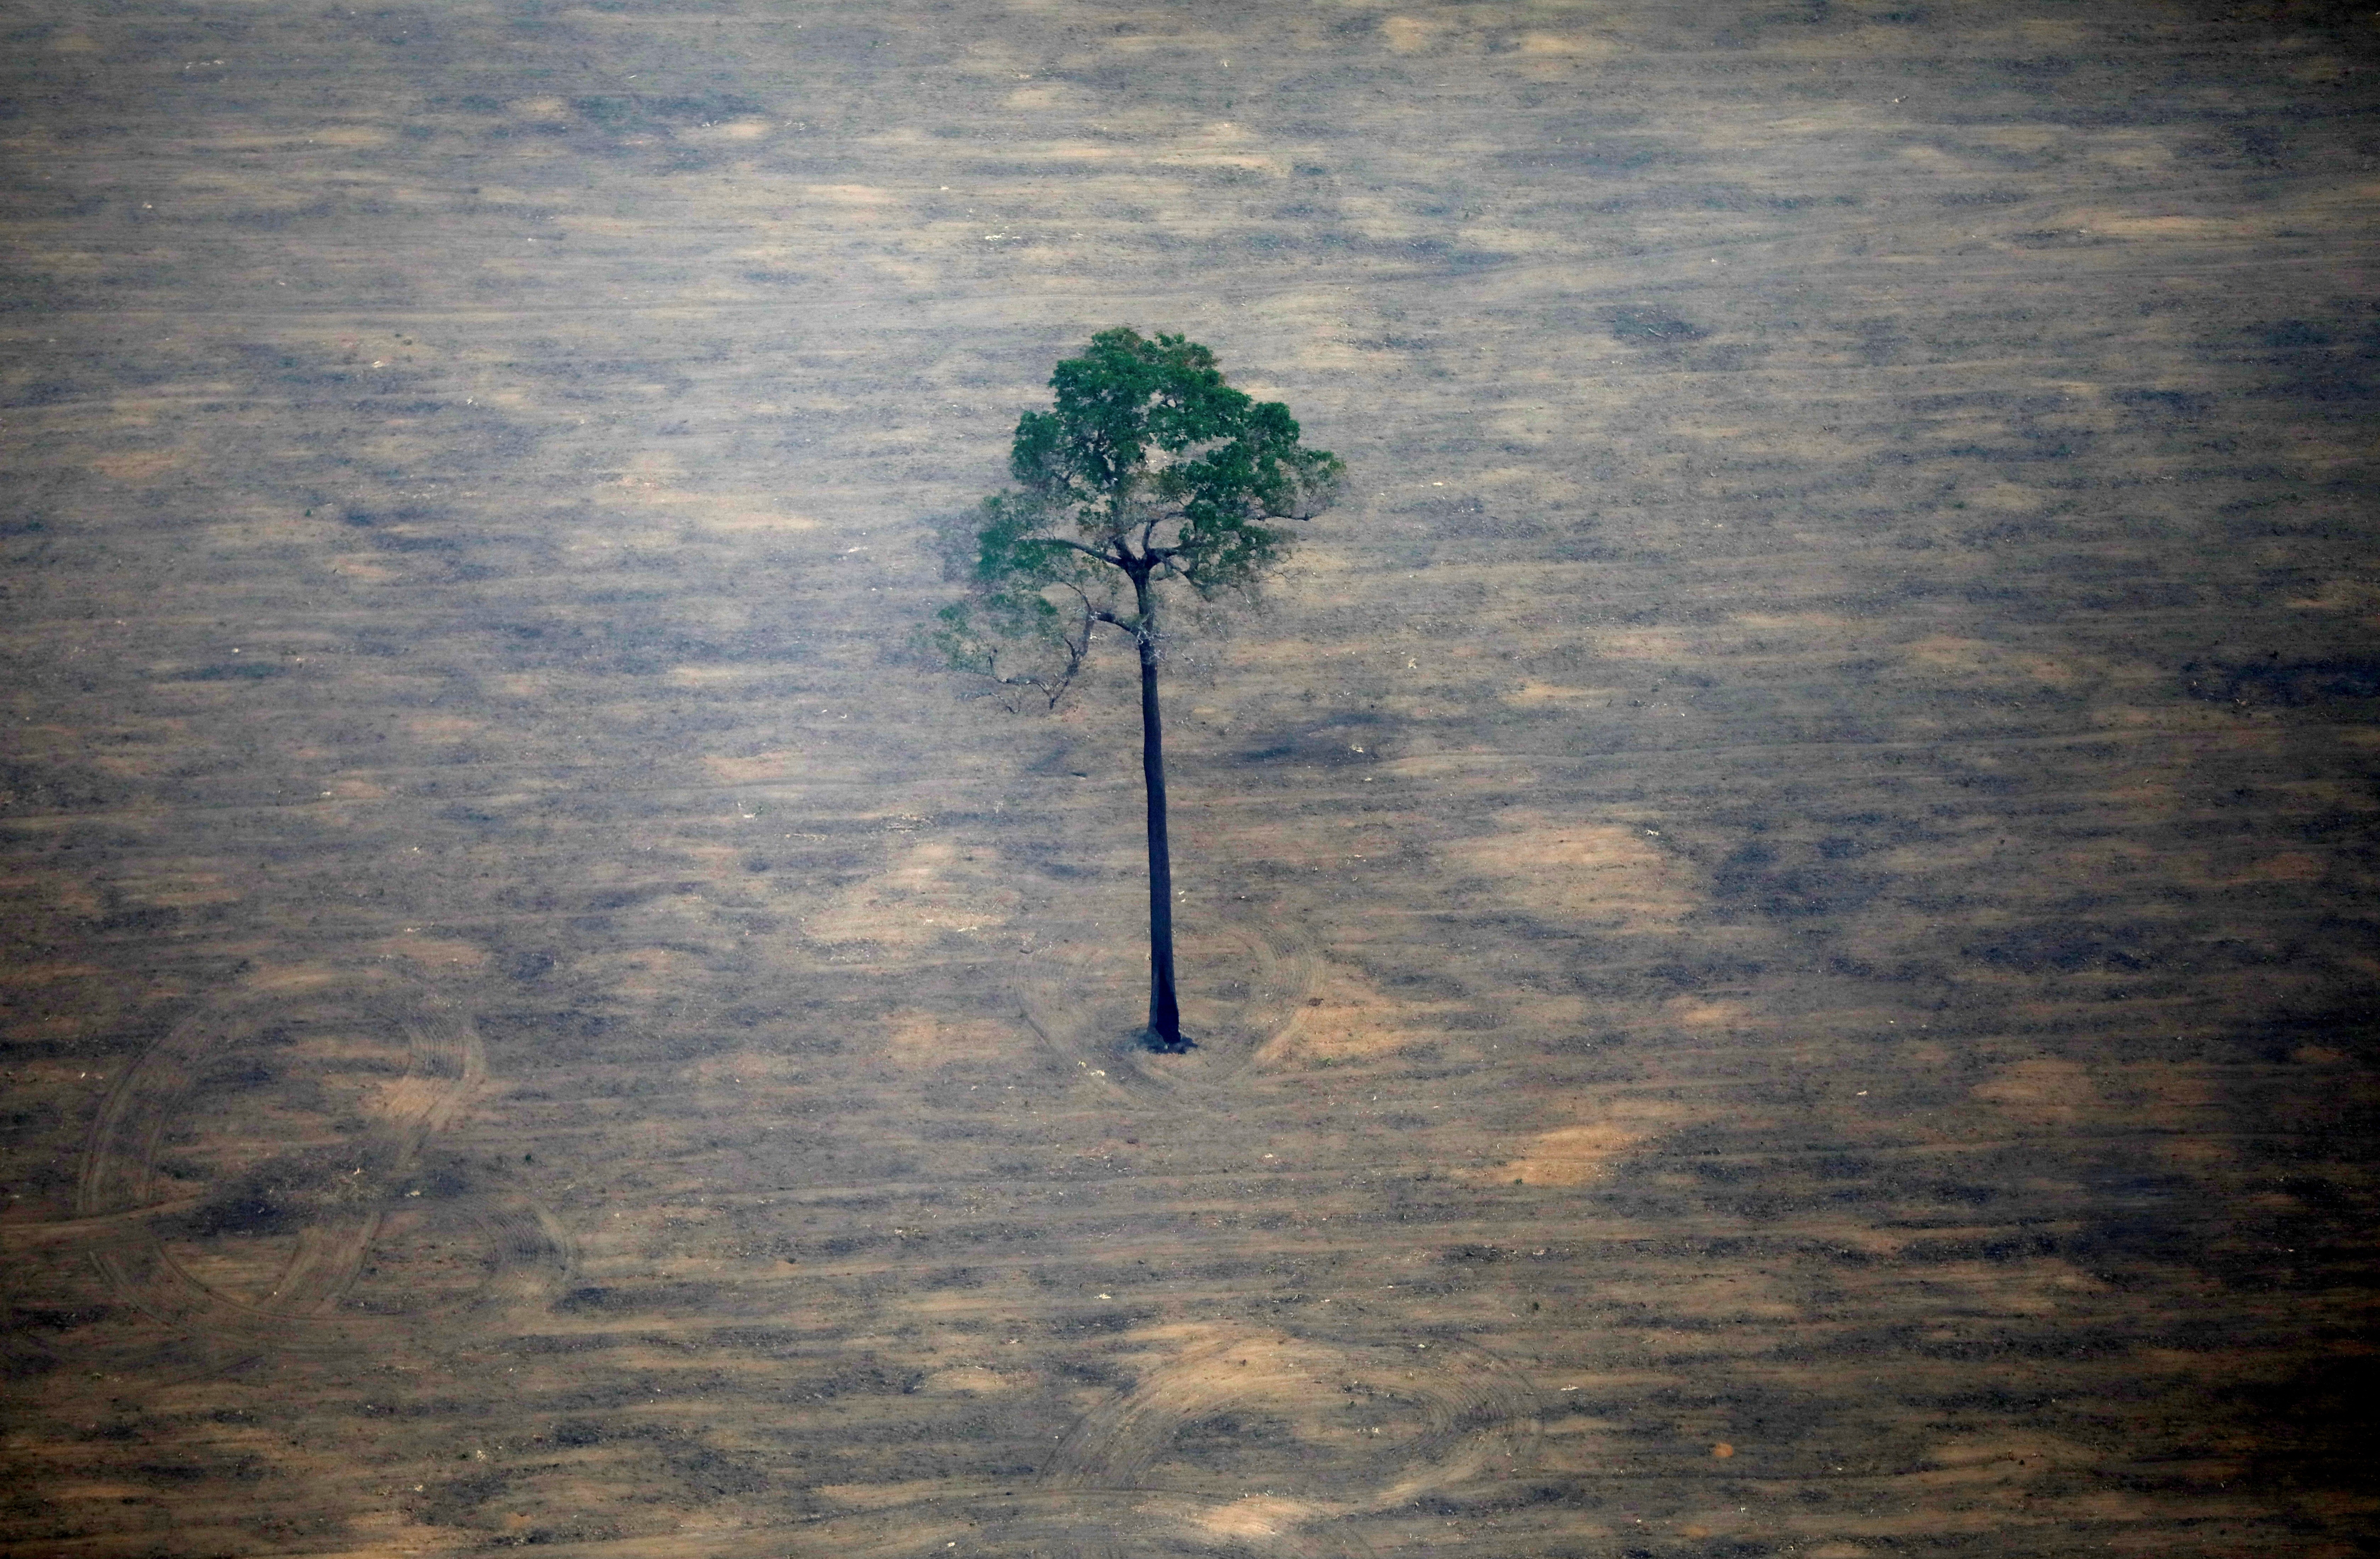 Imagem em sobrevoo na região amazônica próxima a Porto Velho (RO) (Foto: REUTERS/Bruno Kelly/File Photo)